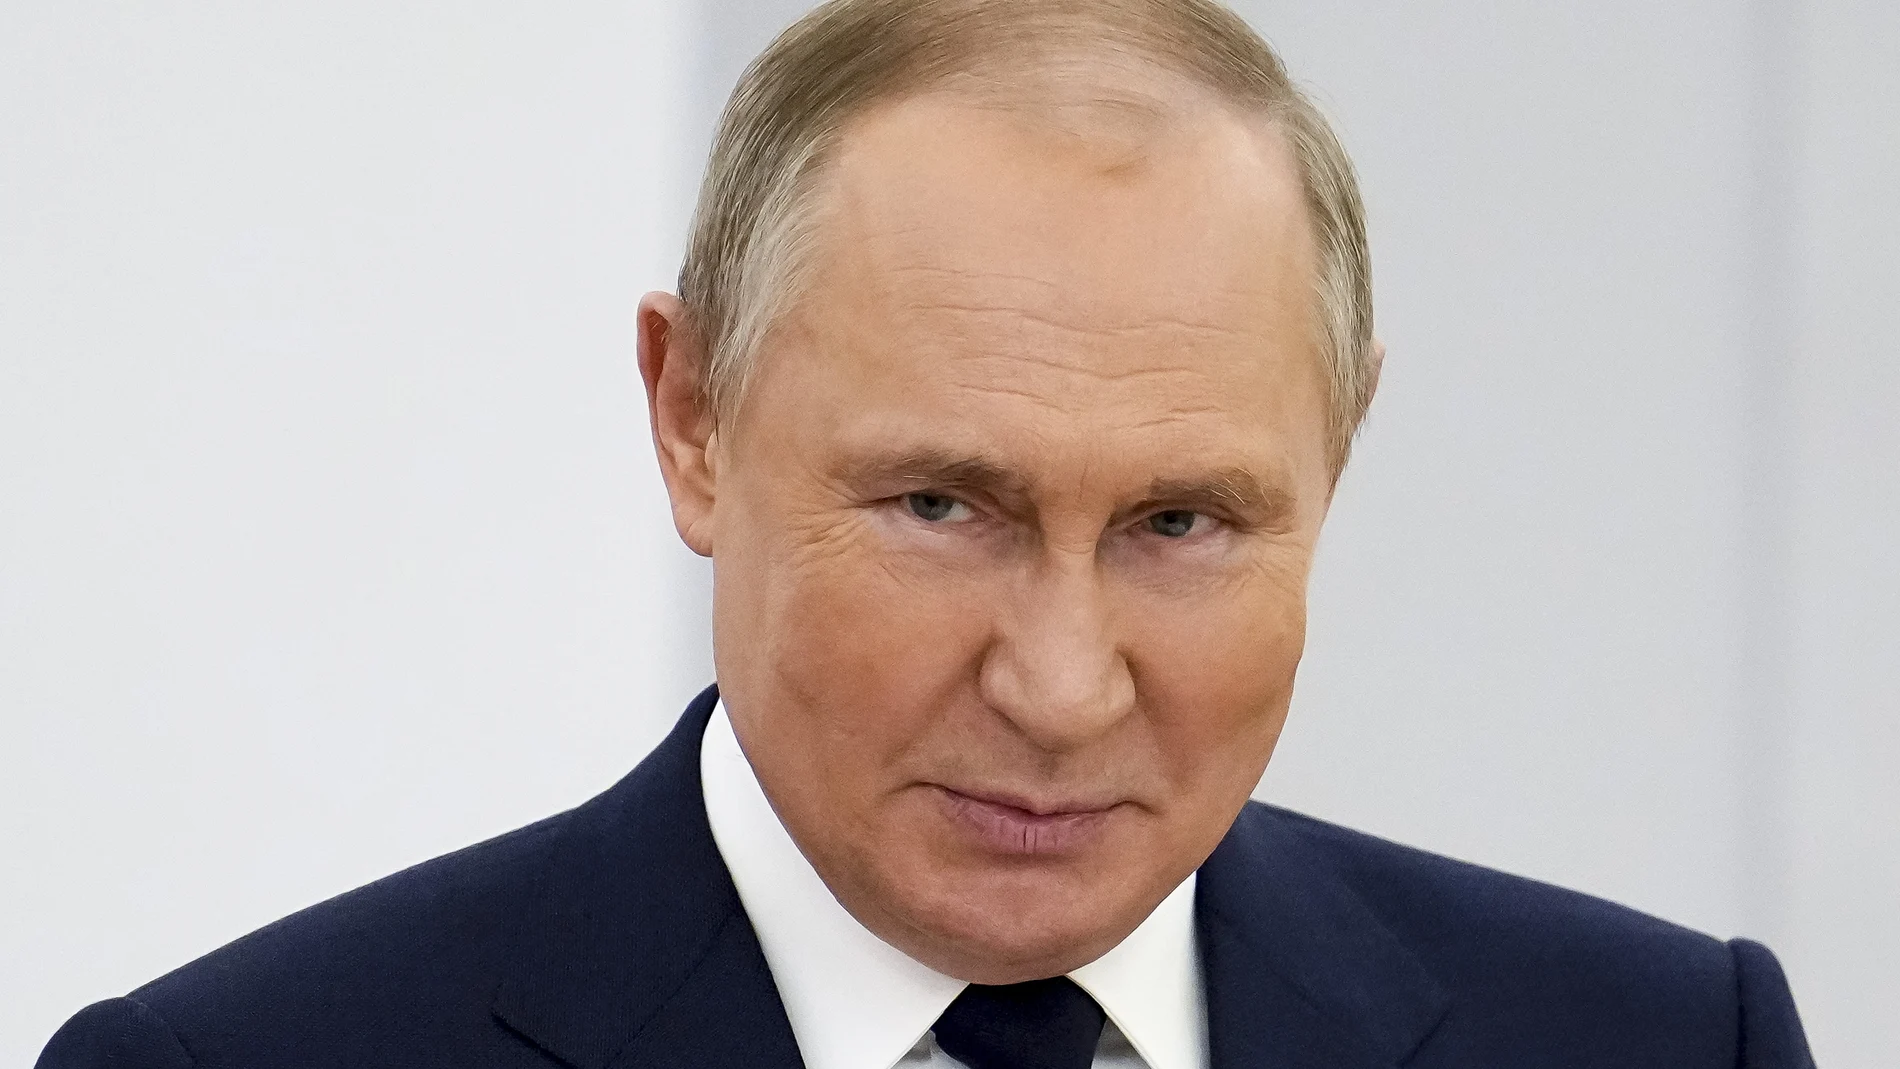 Las fuentes de inteligencia han hablado de que Putin podría sufrir Parkinson o demencia, e incluso cáncer, pese a que el Kremlin no ha declarado nada oficial